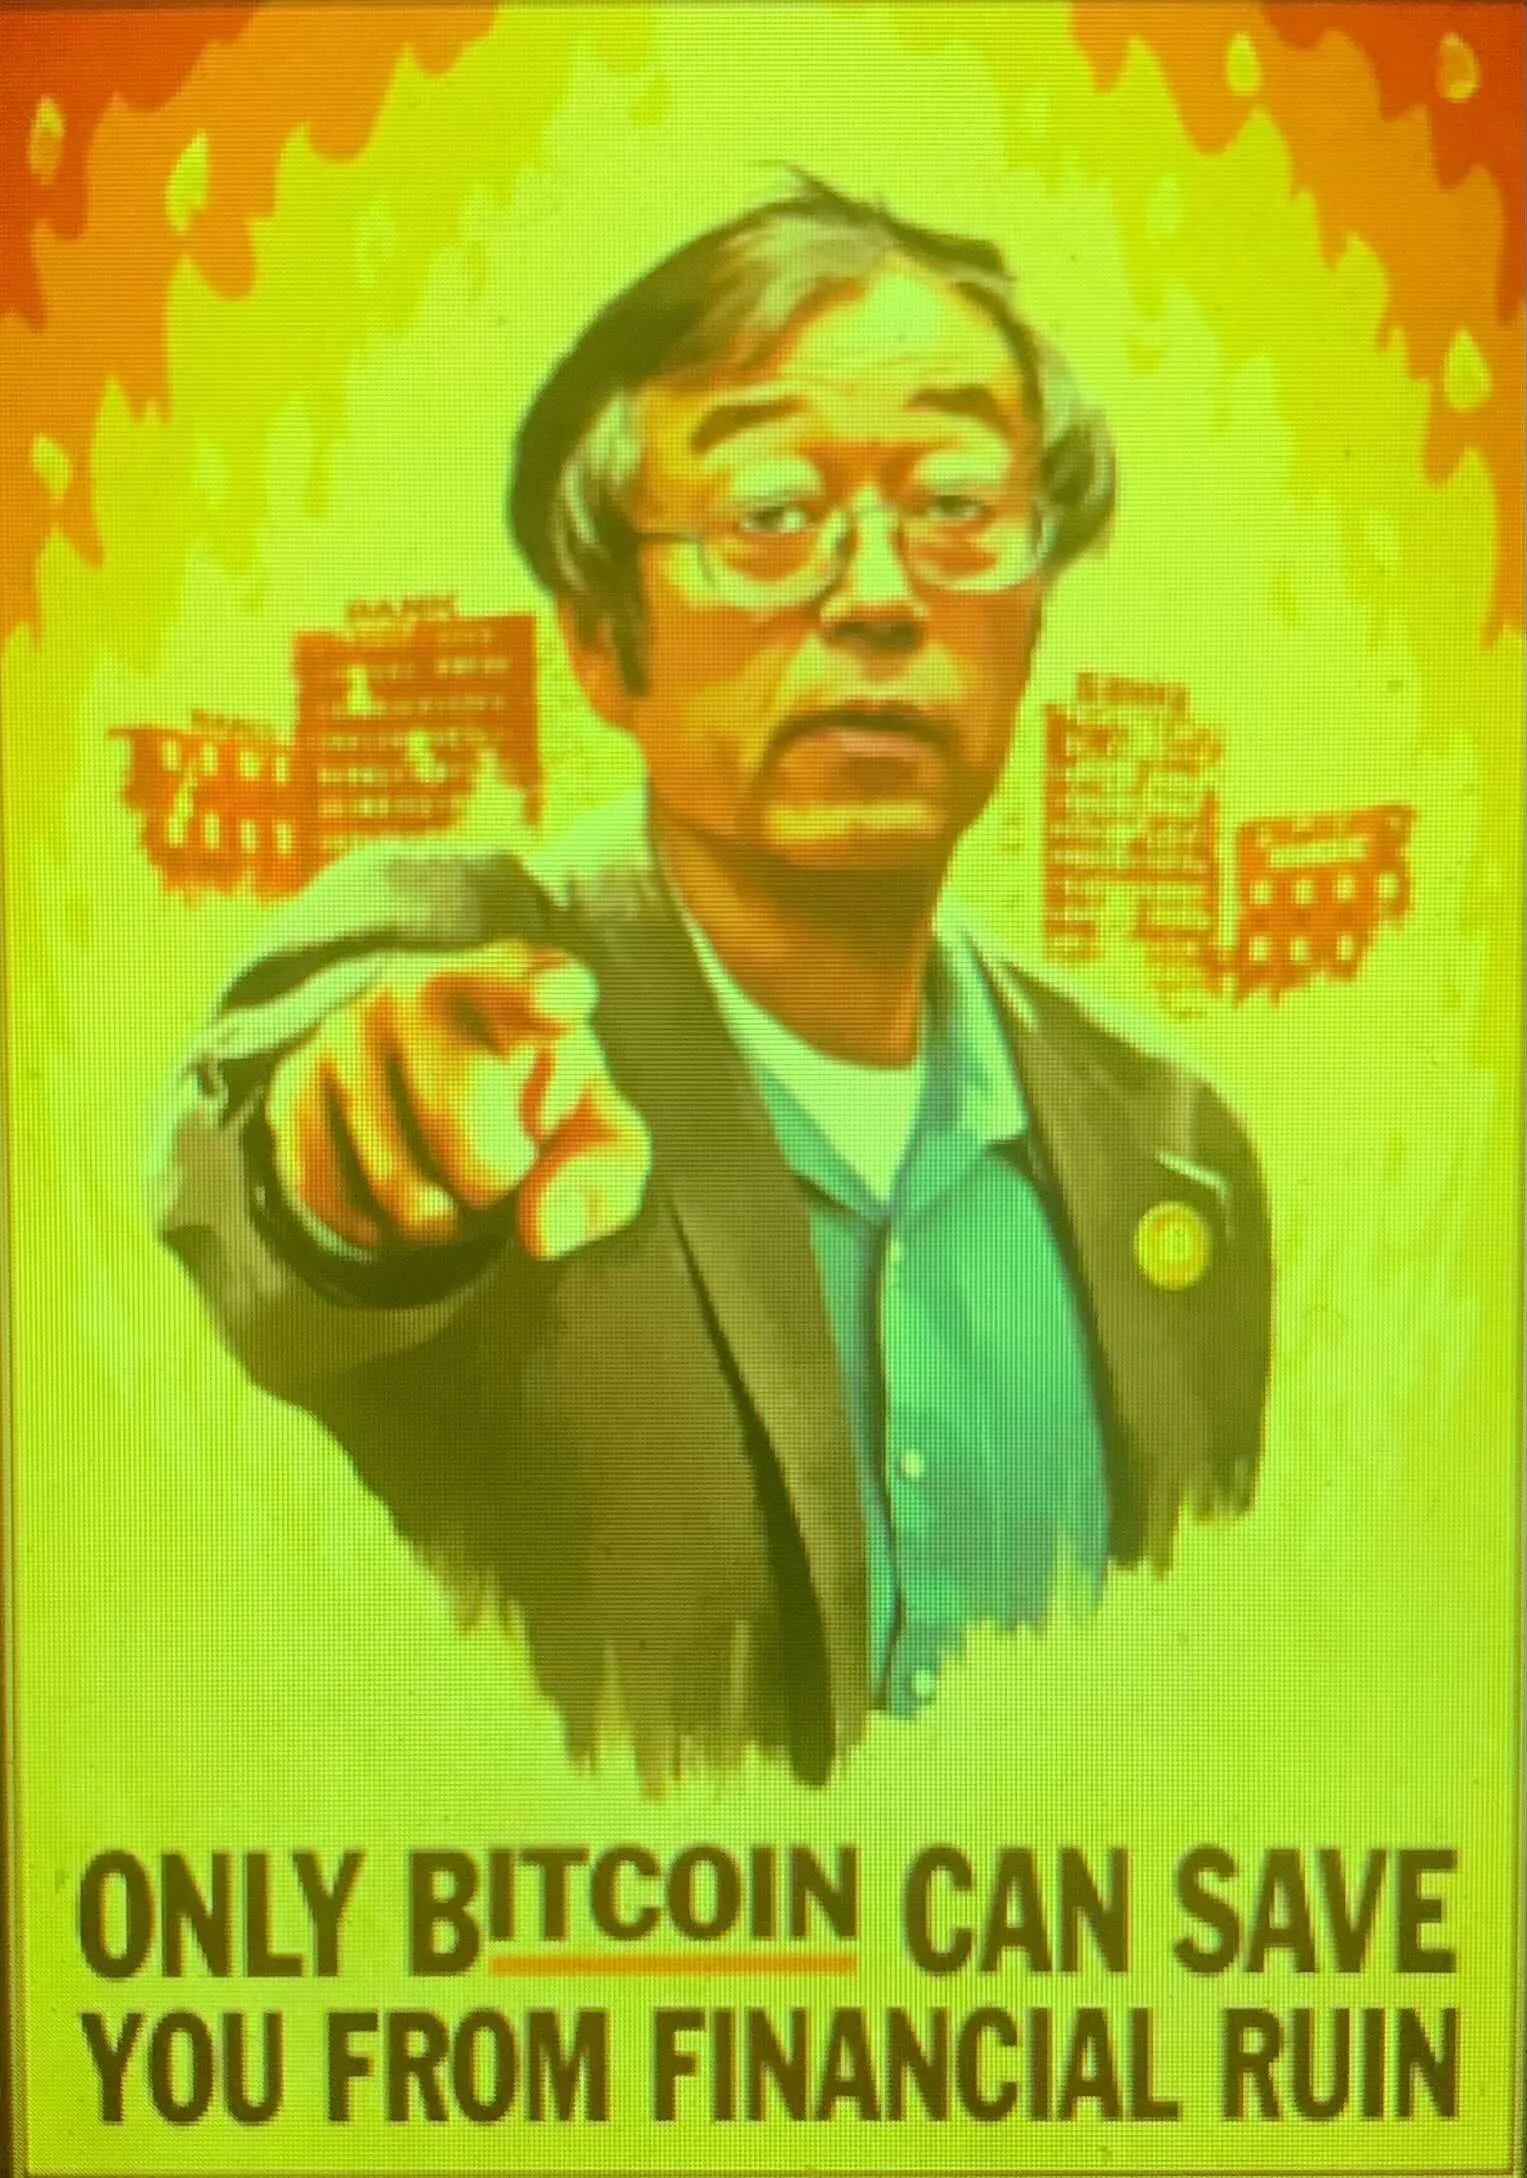 A Satoshi poster